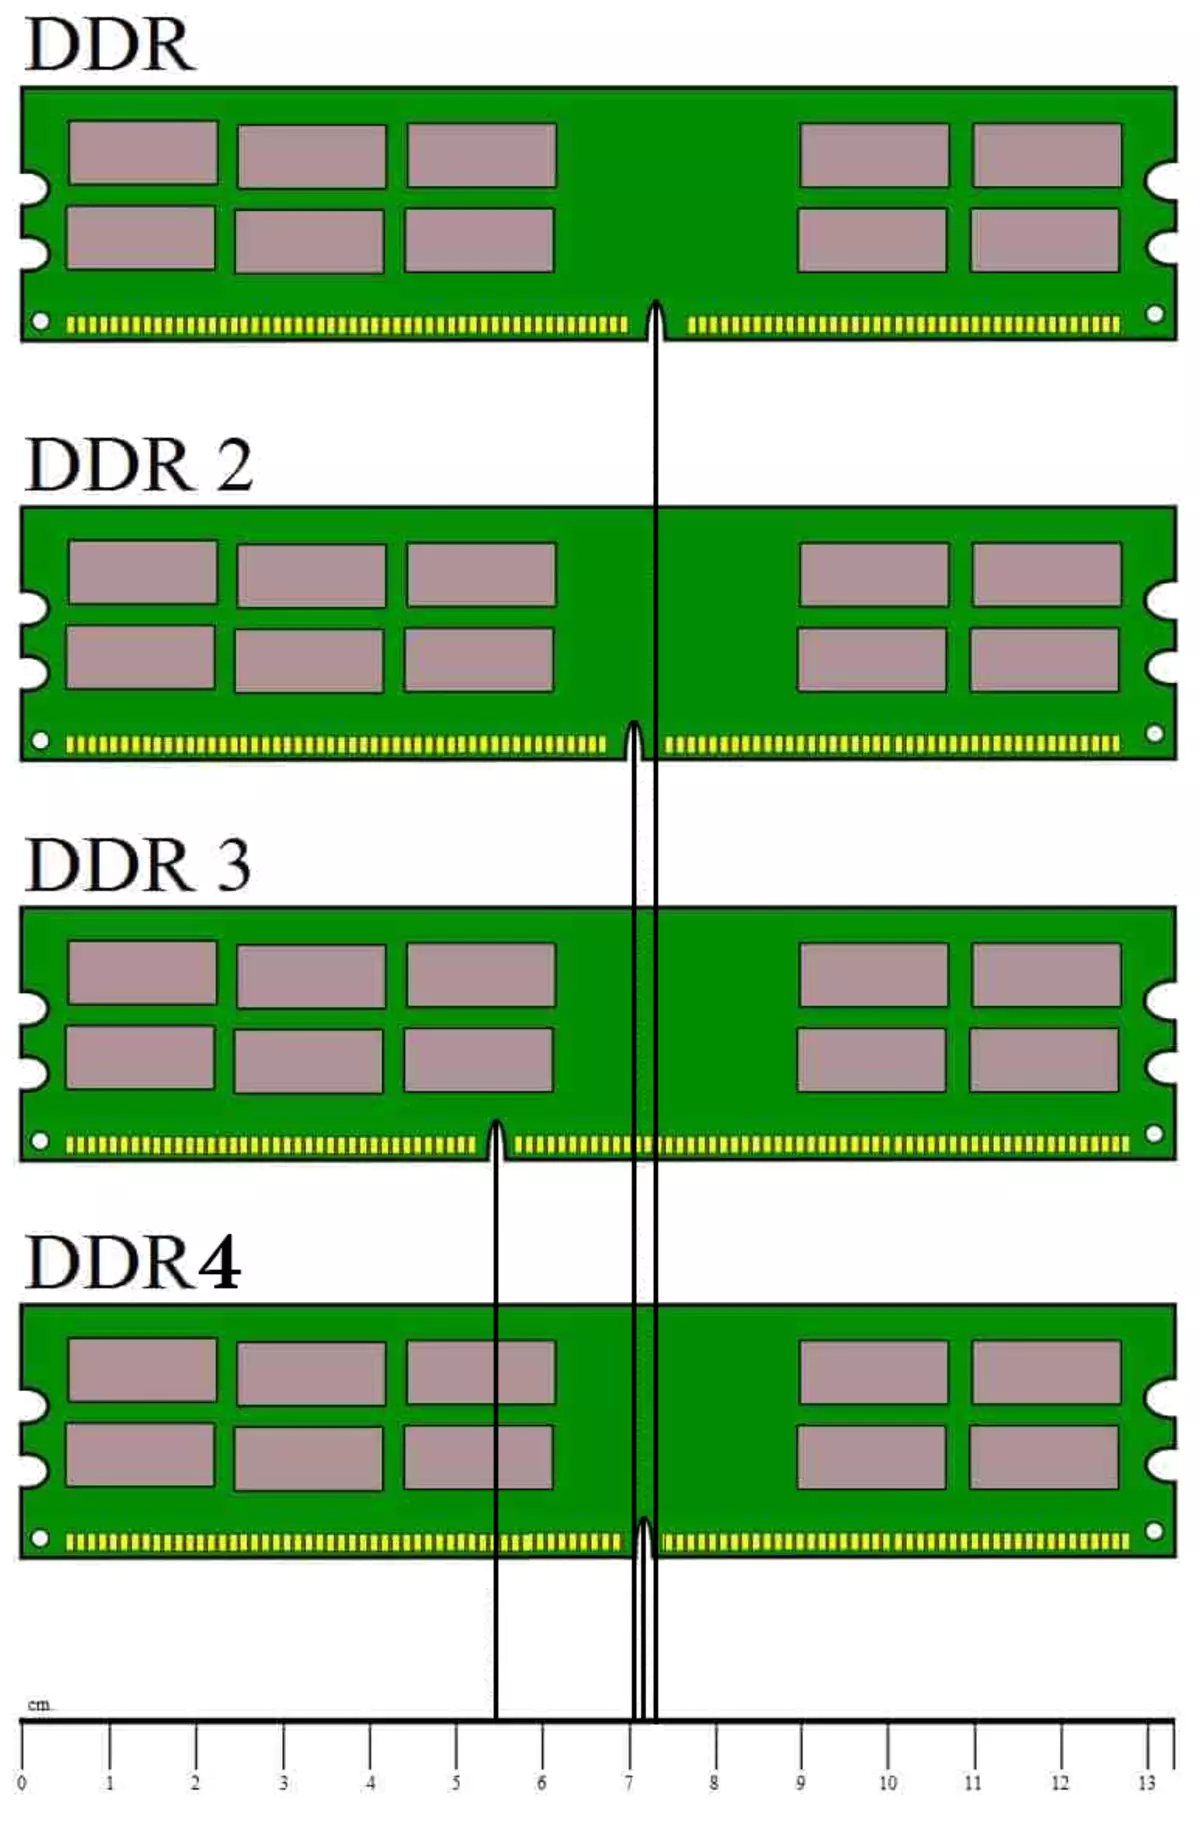 სხვადასხვა ტიპის RAM- ის კონსტრუქციული მახასიათებლები